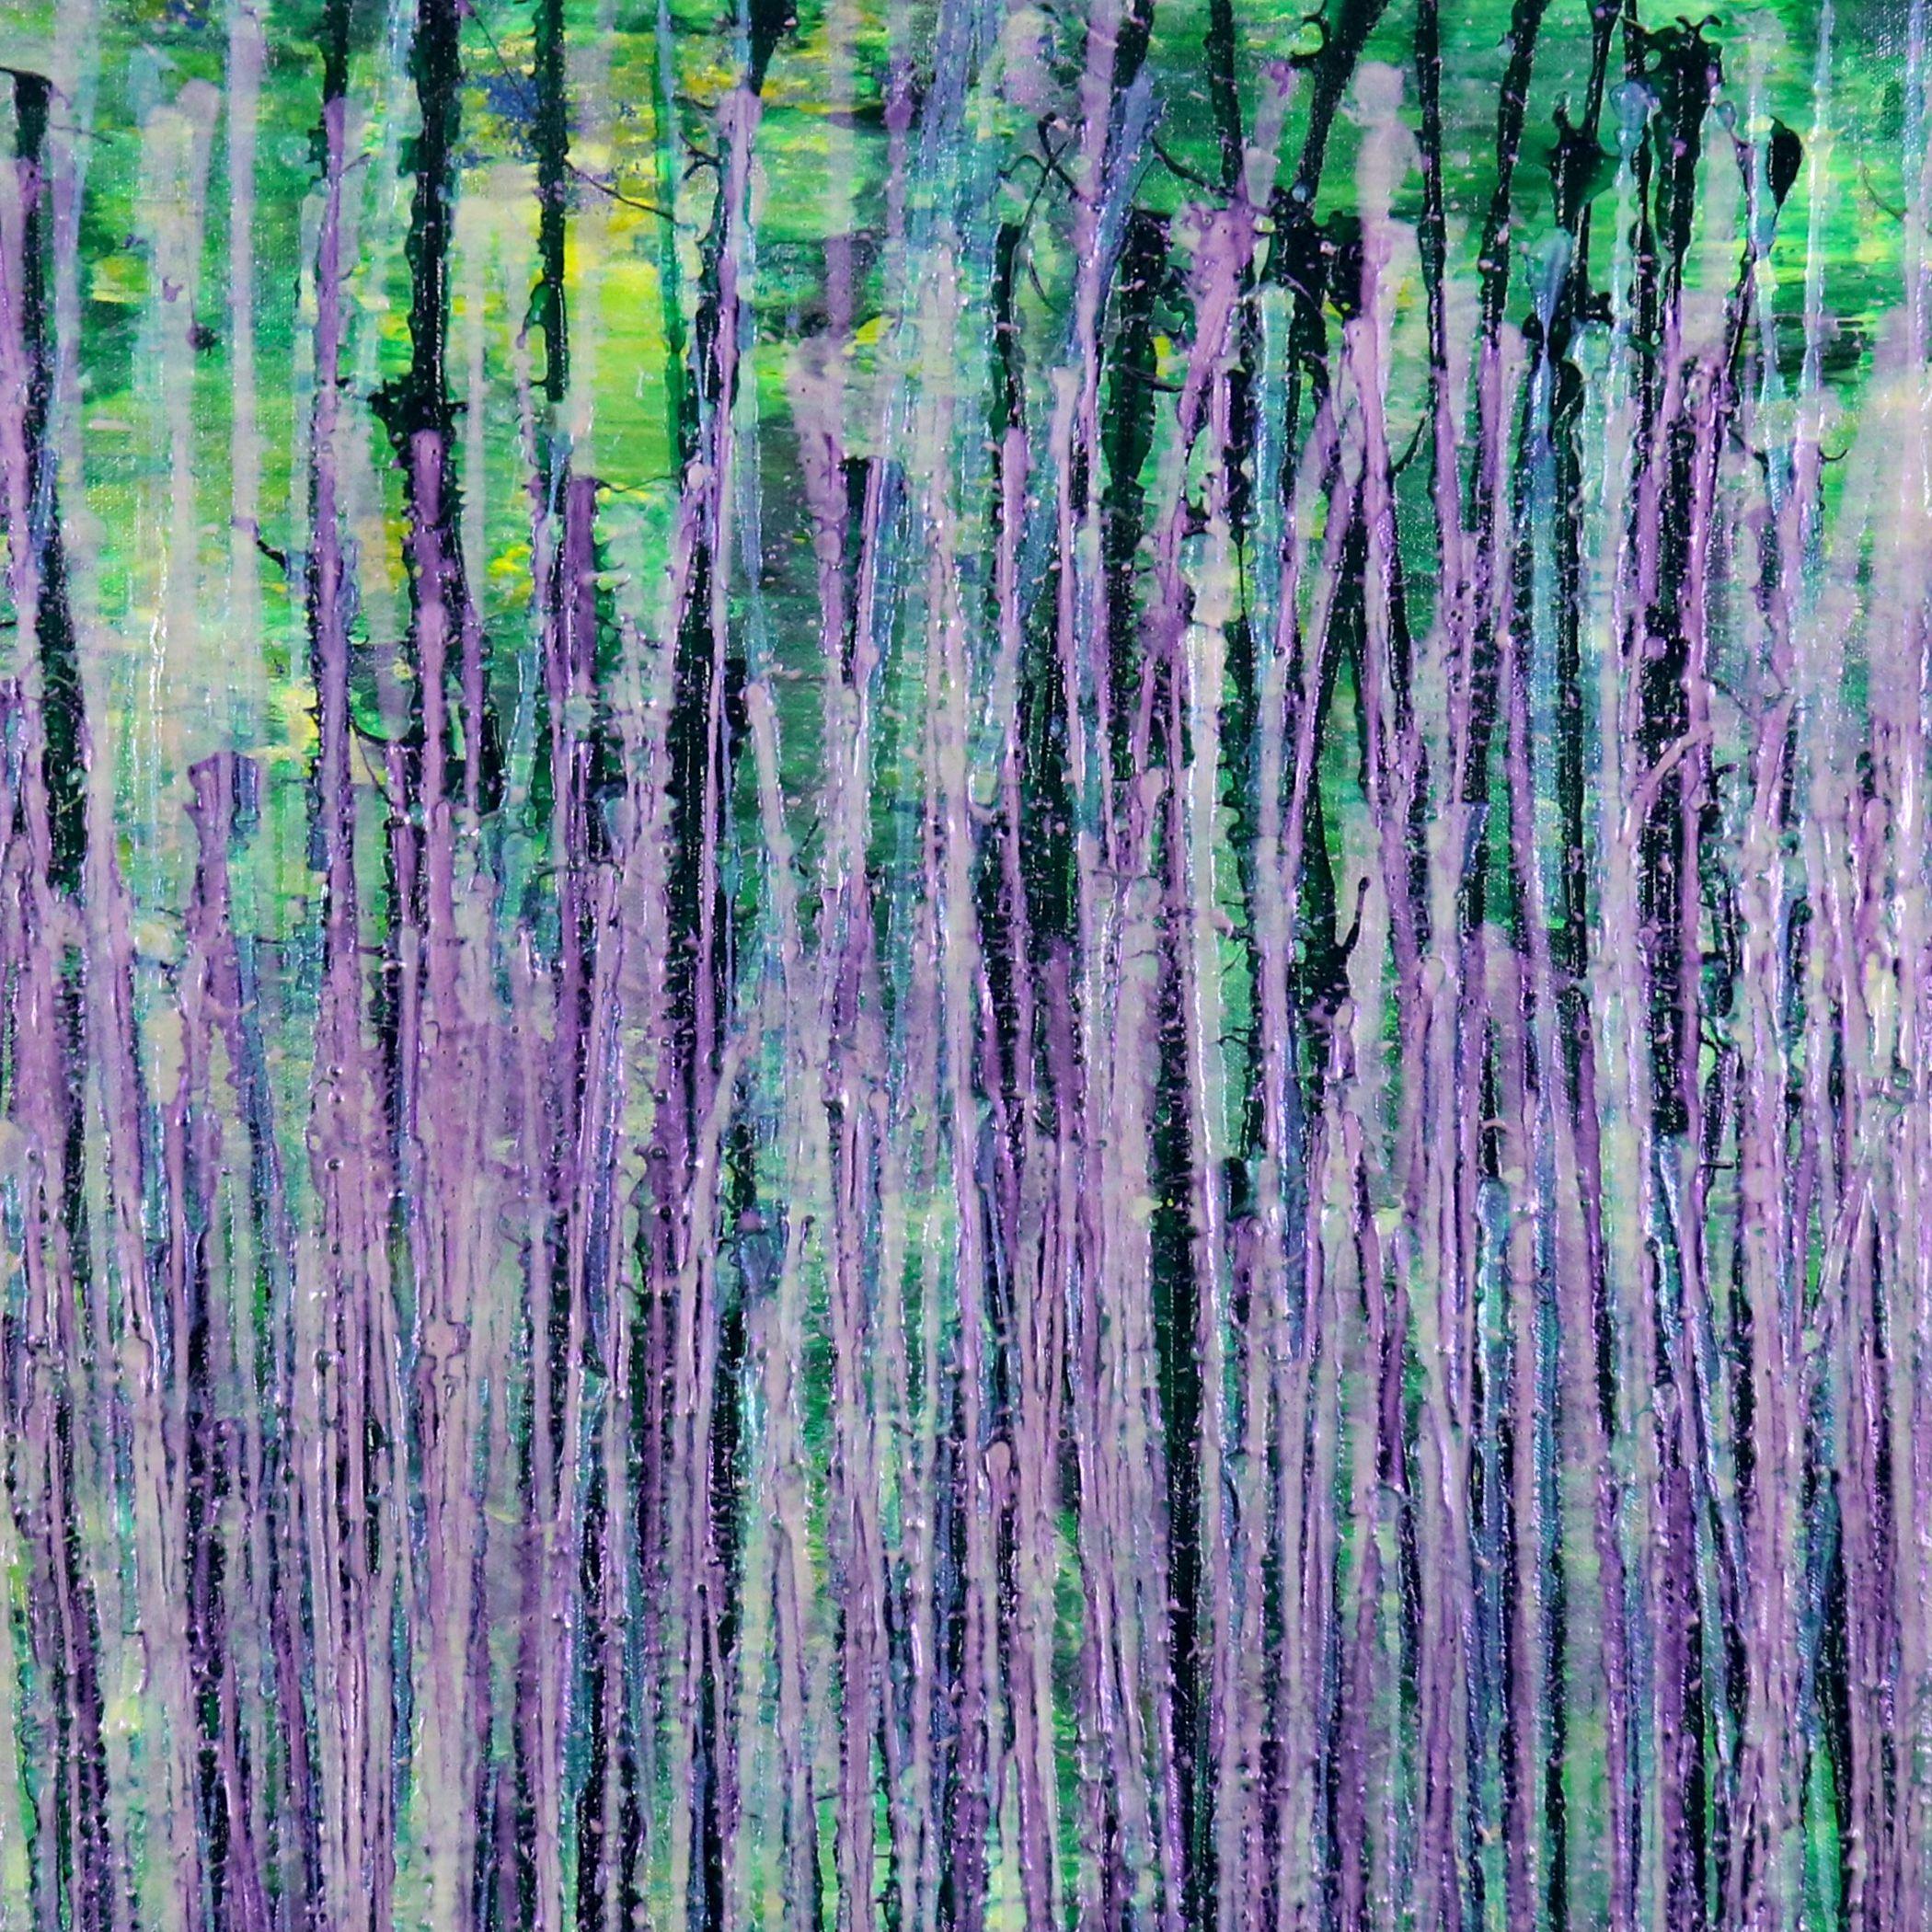 Inspiriert von den leuchtenden Farben des Waldes. Diese expressionistische abstrakte verwendet viel Grün im Hintergrund mit grünem Nieselregen und mit einem Ausbruch von irisierenden klaren lila und blauen Glimmerpartikeln. Vorne signiert.    Ich